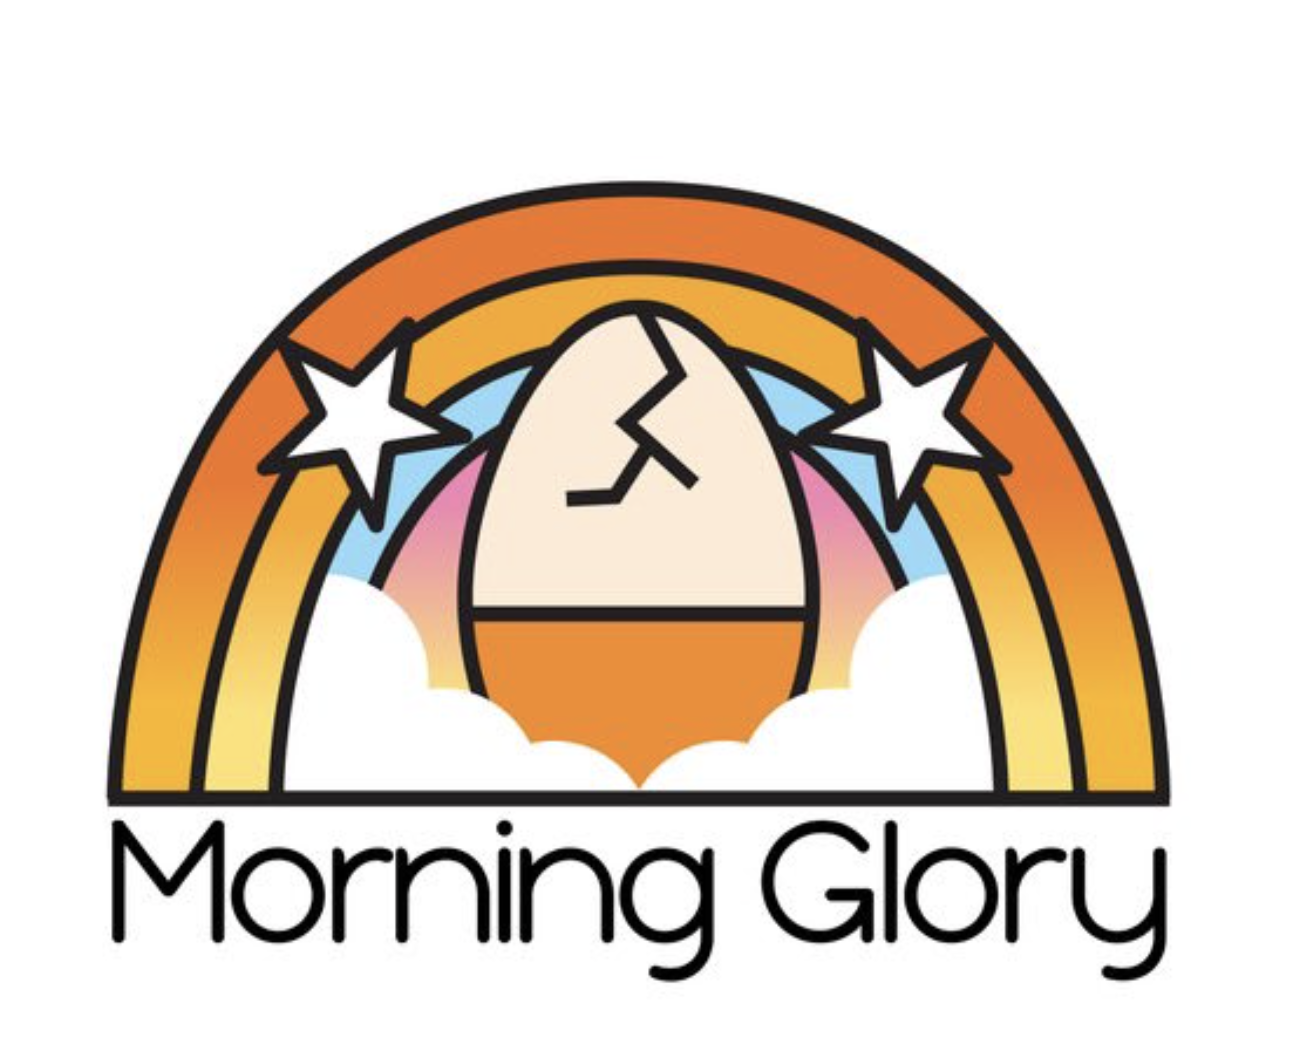 Morning Glory logo